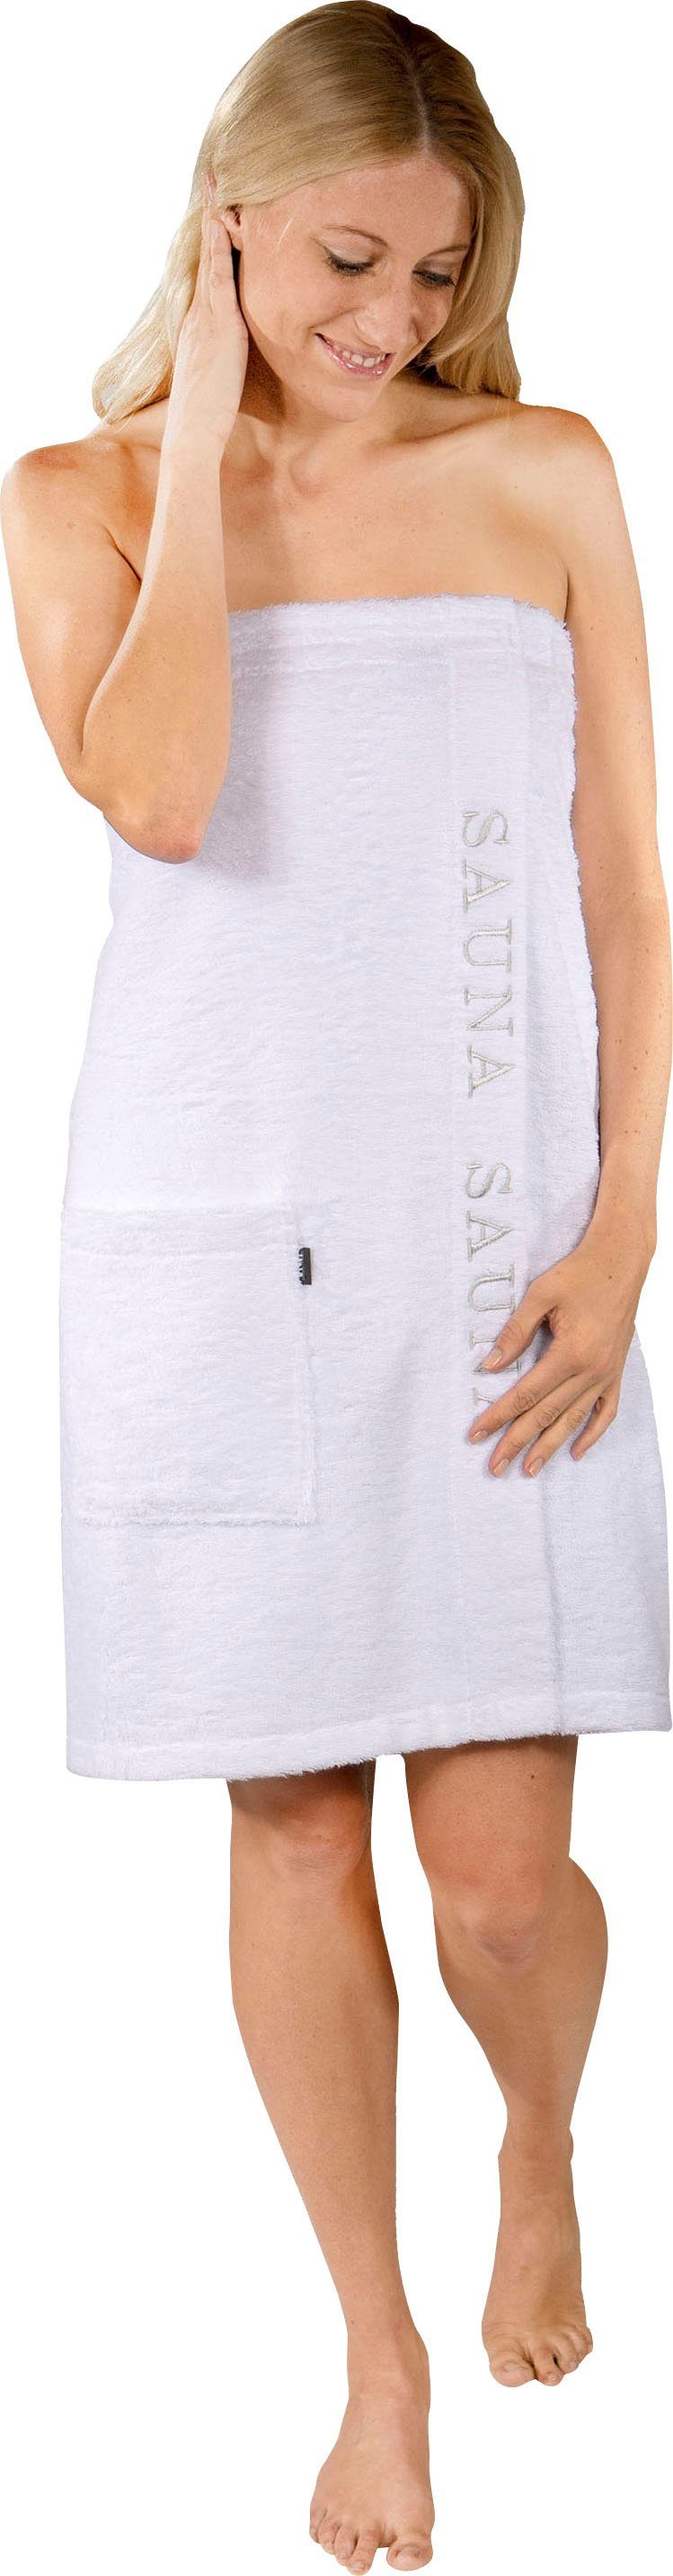 Wewo fashion Kilt 9534, Langform, Baumwolle, Klettverschluss, Saunakilt für Damen, mit Klettverschluss & Stickerei Sauna weiß